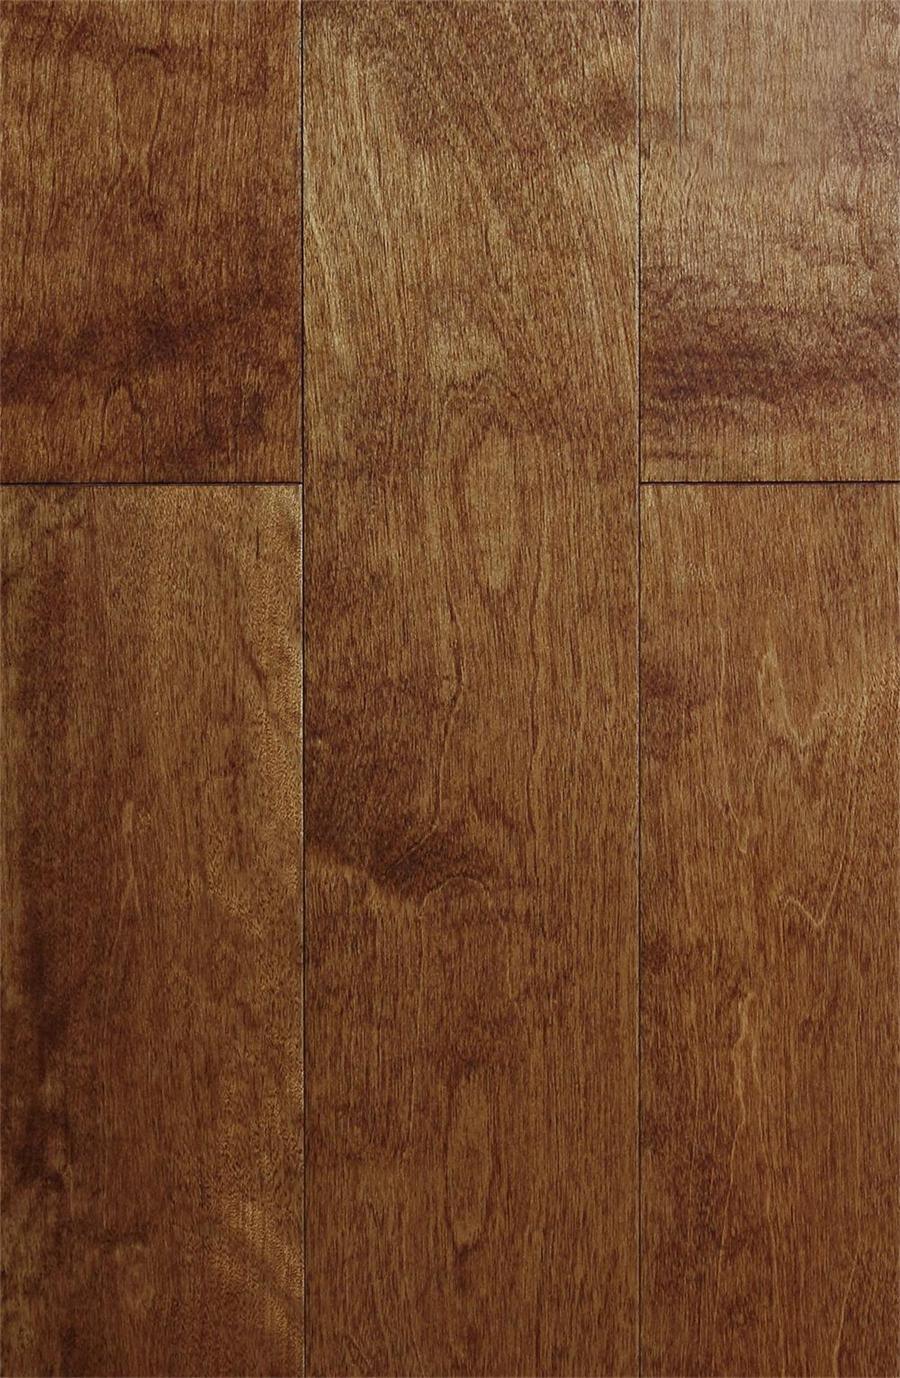 Cannadia Maple Engineered Wood Flooring Laminated Flooring Wood Flooring